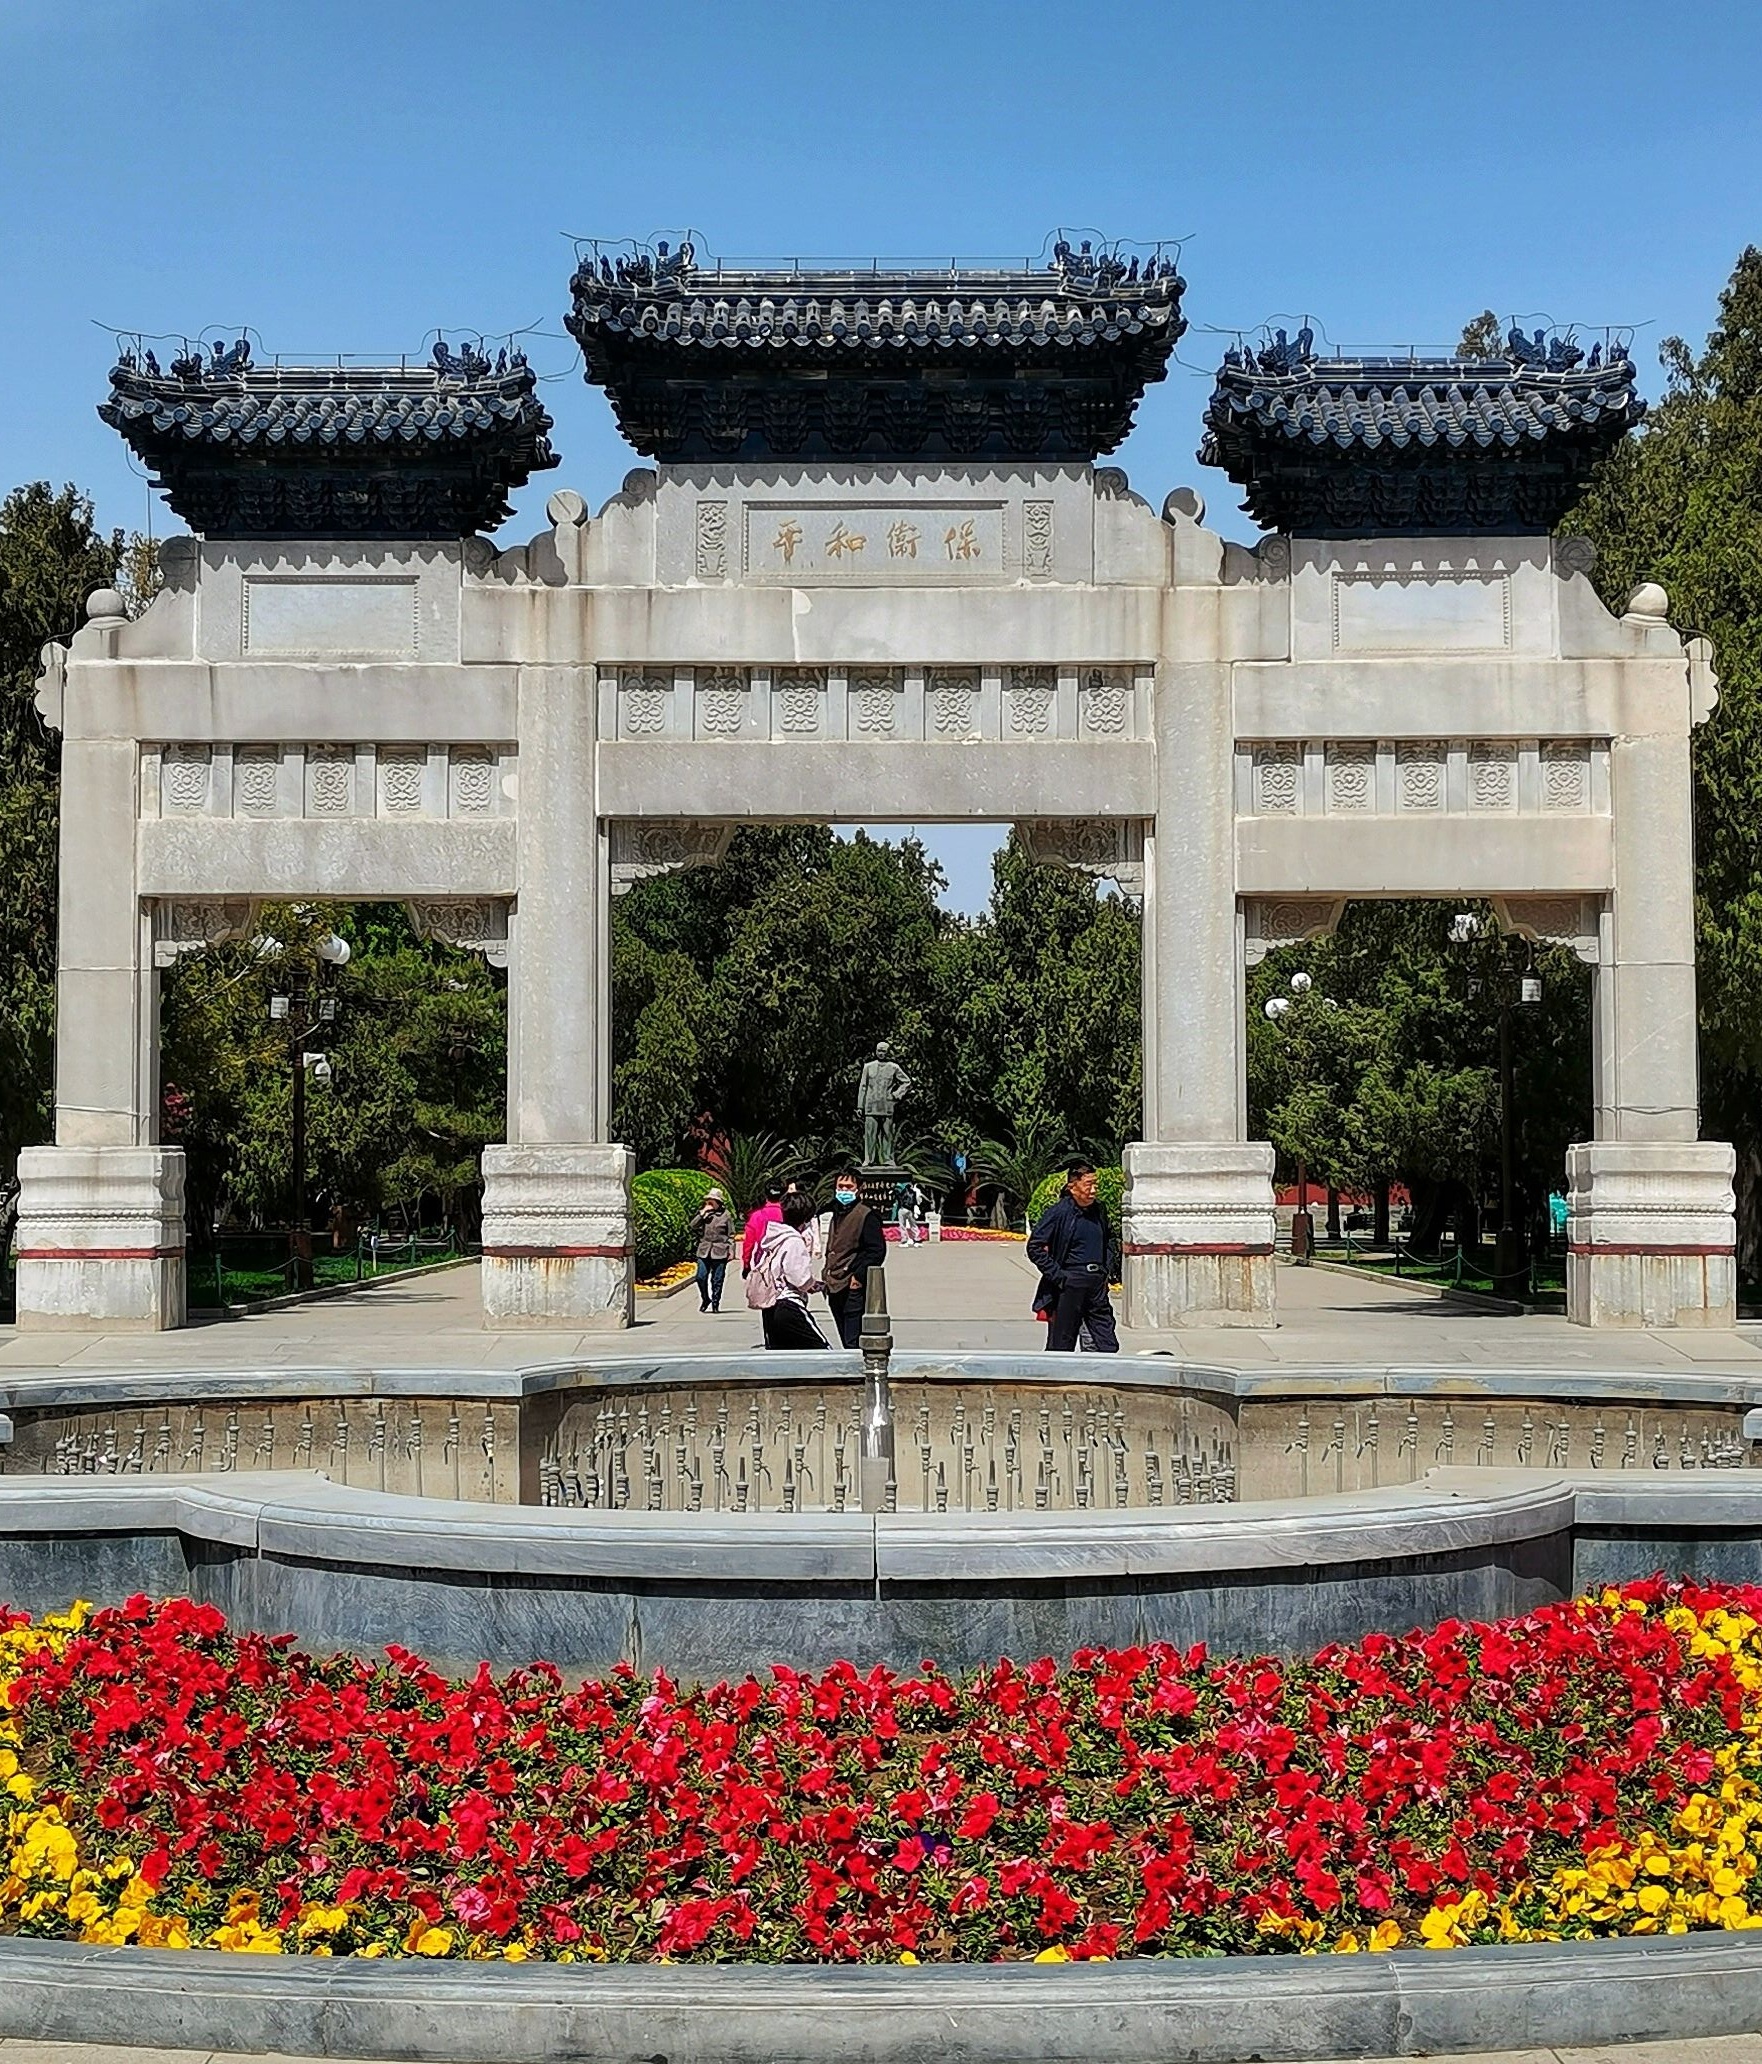 四月二十七日来到北京中山公园,虽然已经是晚春,但这里的郁金香和其他